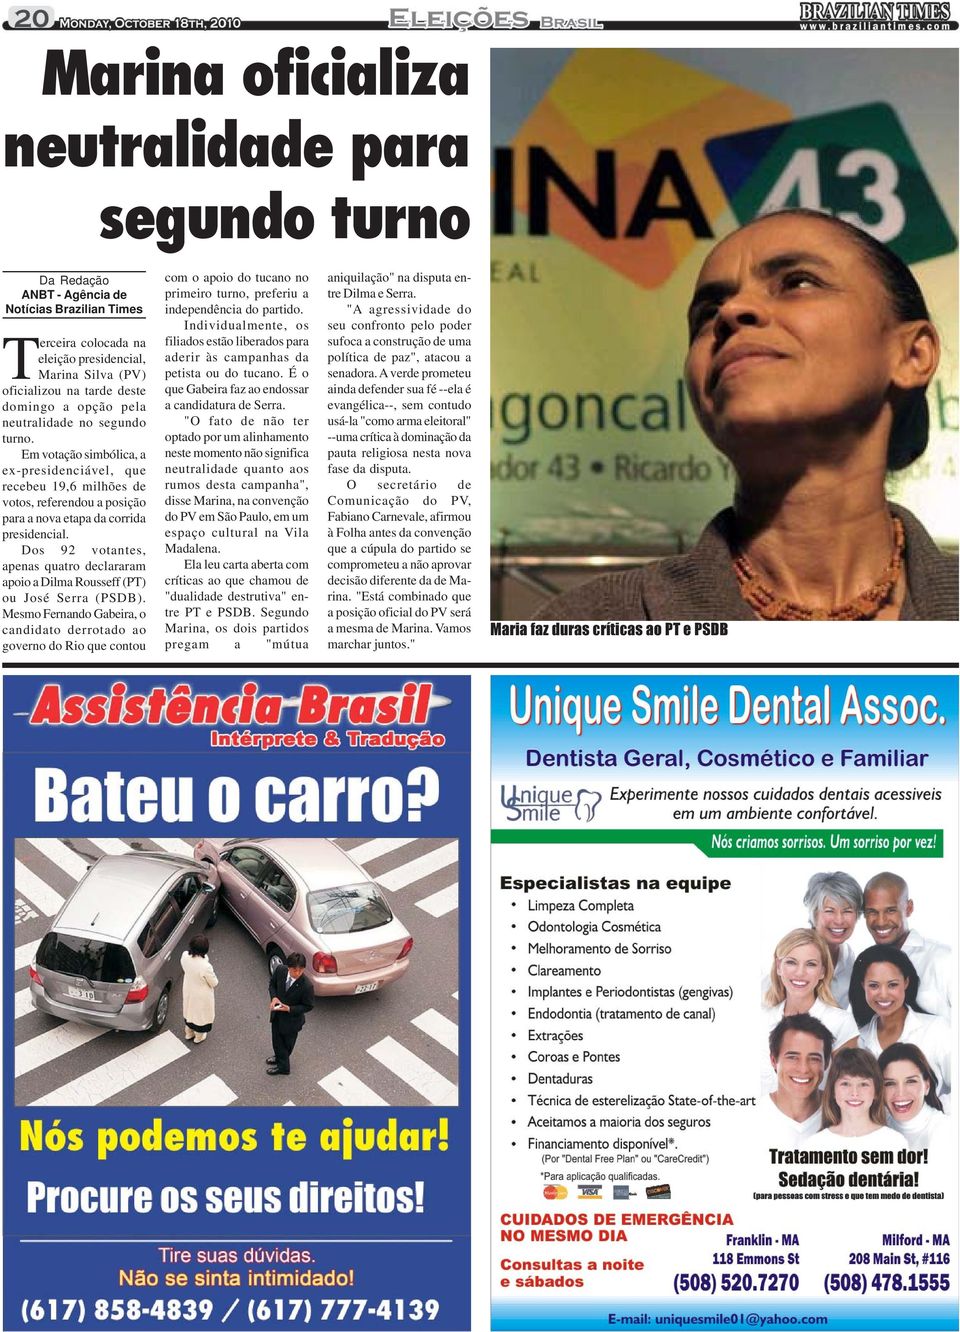 Dos 92 votantes, apenas quatro declararam apoio a Dilma Rousseff (PT) ou José Serra (PSDB).